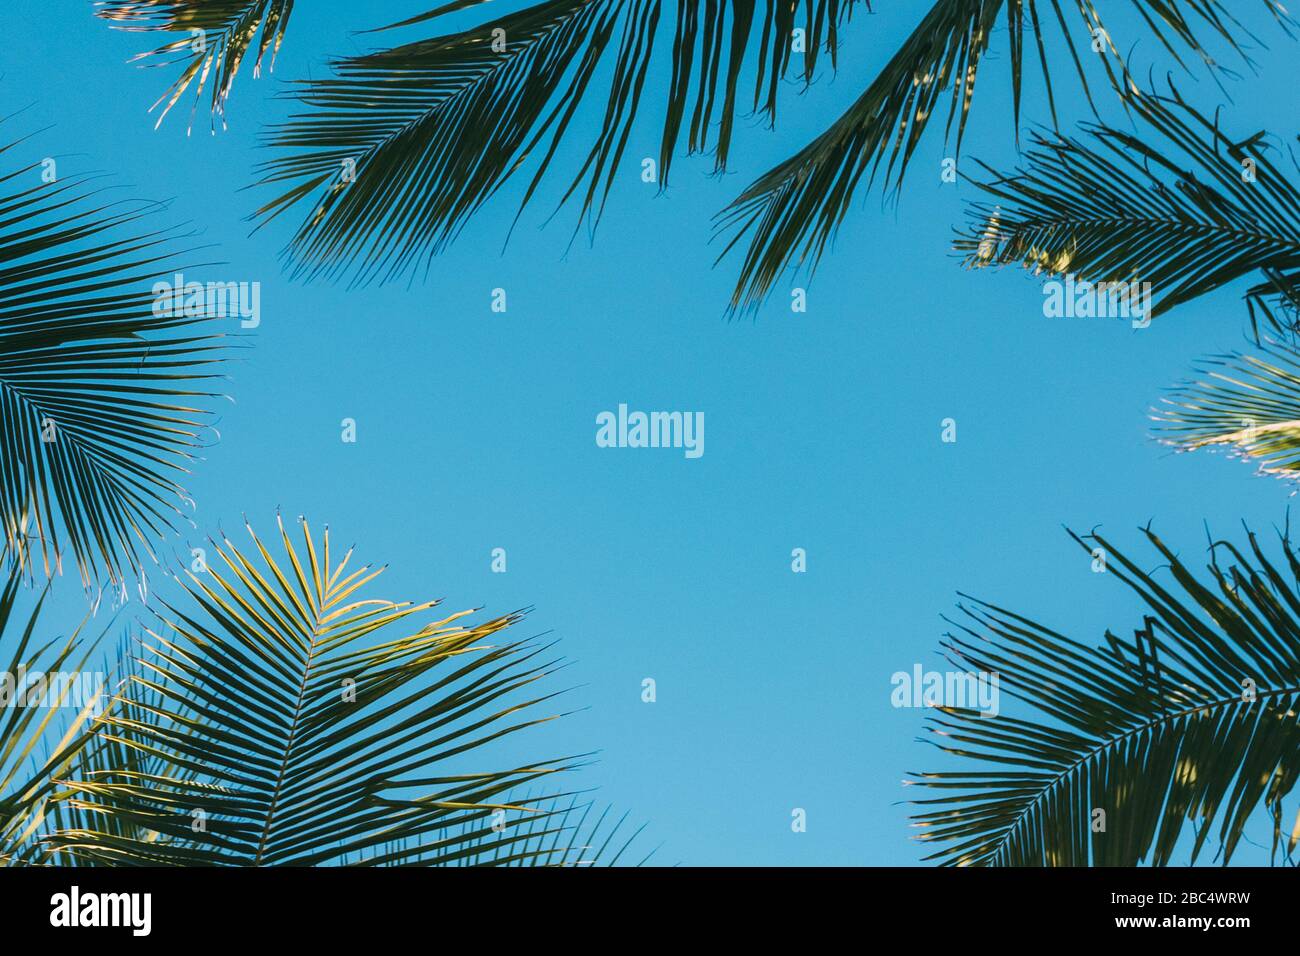 Sfondo tropicale, palme da cocco foglie su uno sfondo di cielo blu chiaro, sfondo estivo, viaggi, natura. Cornice, posiziona per inserire testo o slogan.N Foto Stock